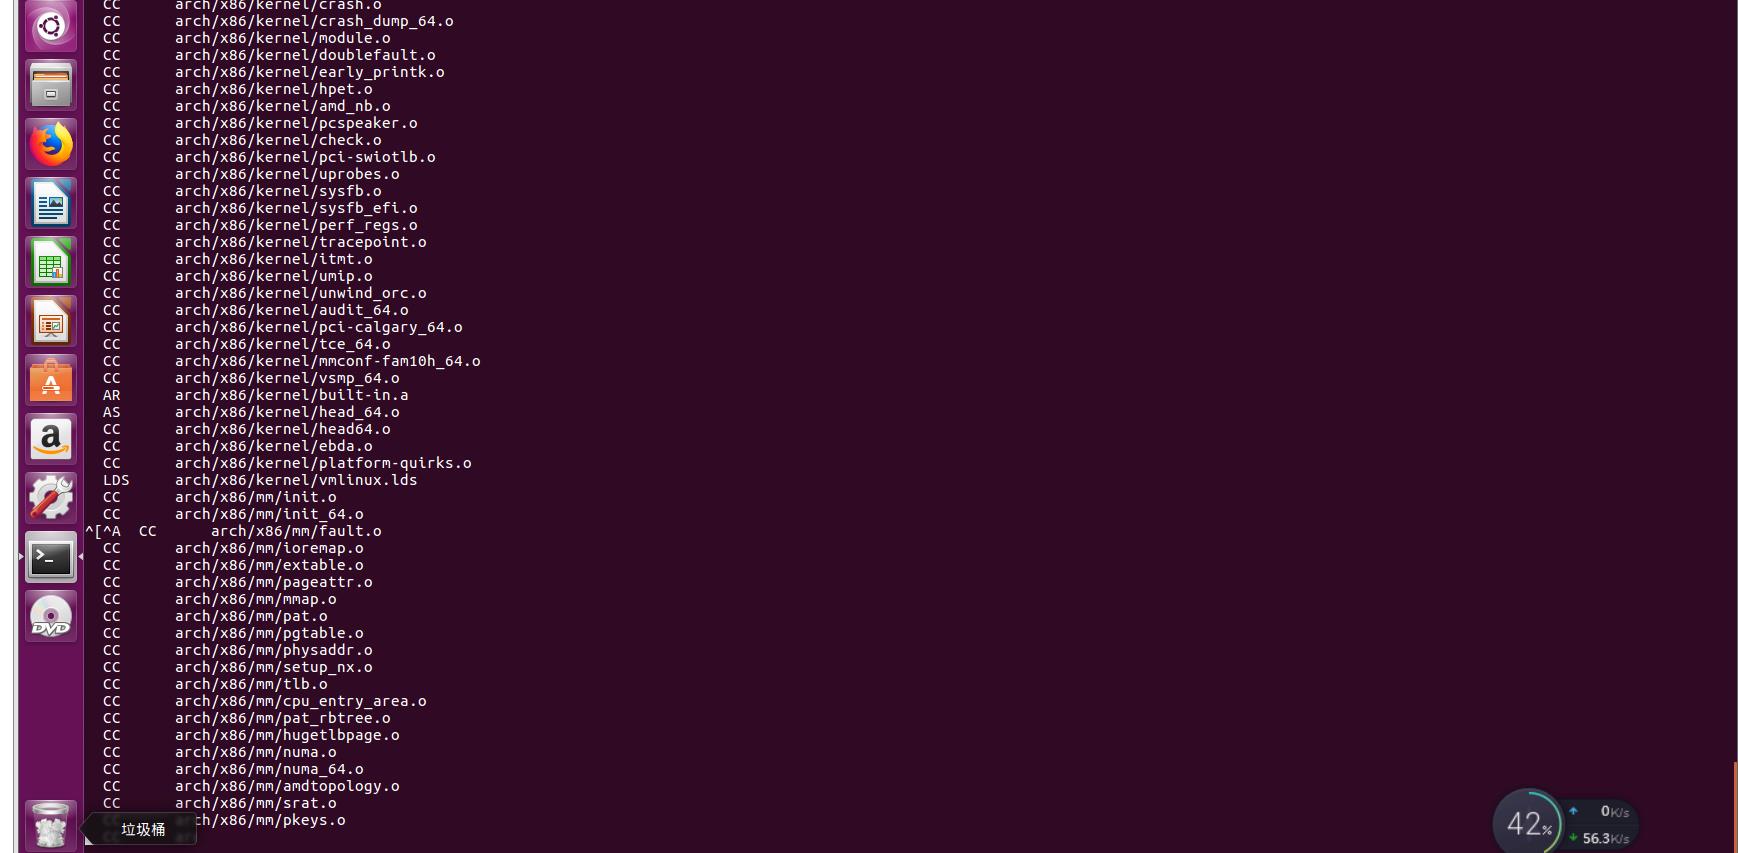 构建调试Linux内核网络代码的环境MenuOS系统 - 文章图片